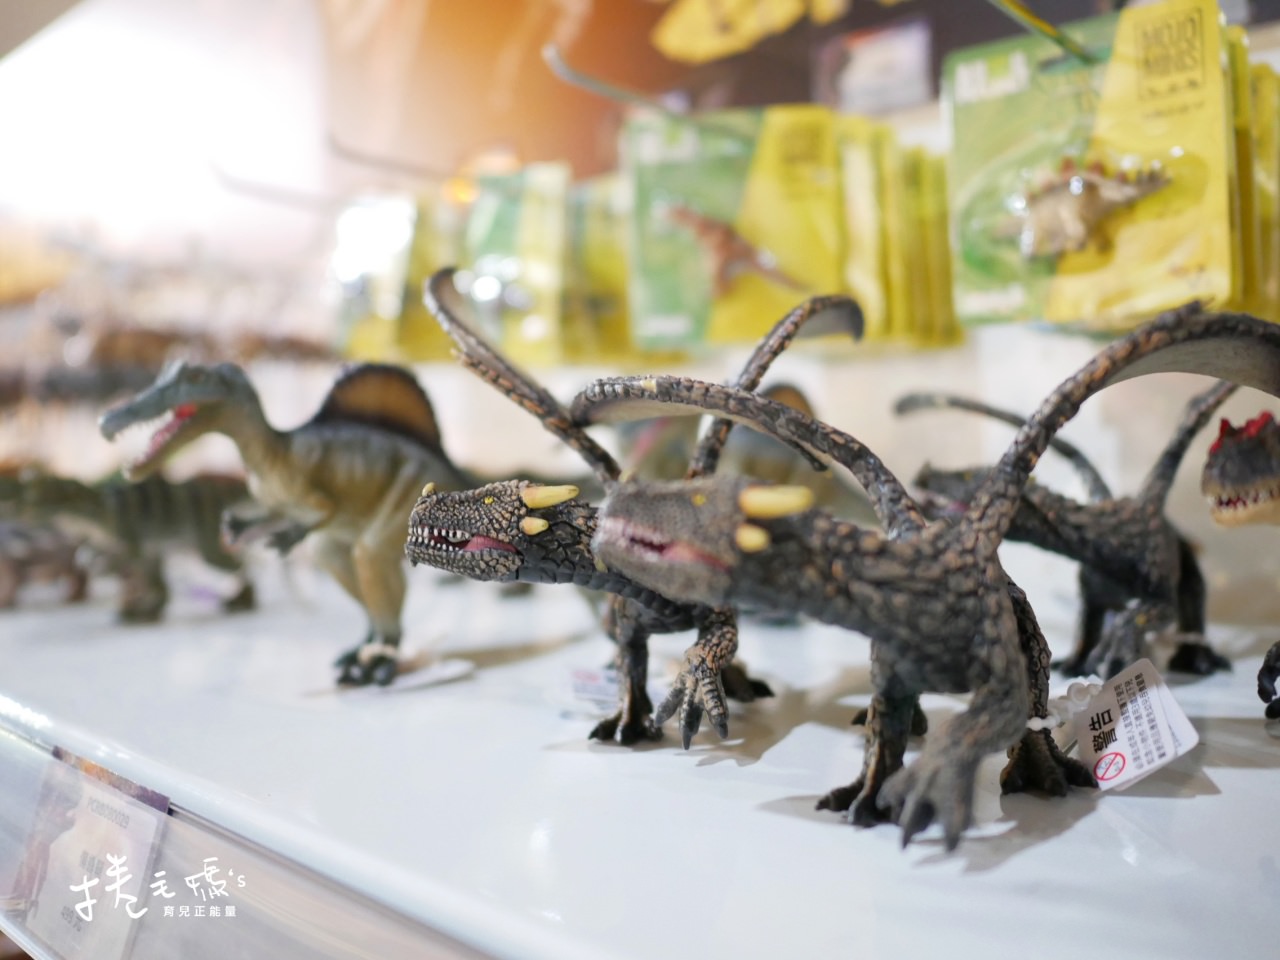 恐龍展 侏儸紀 恐龍 展覽 春節出遊 親子行程 雨天備案P1110840